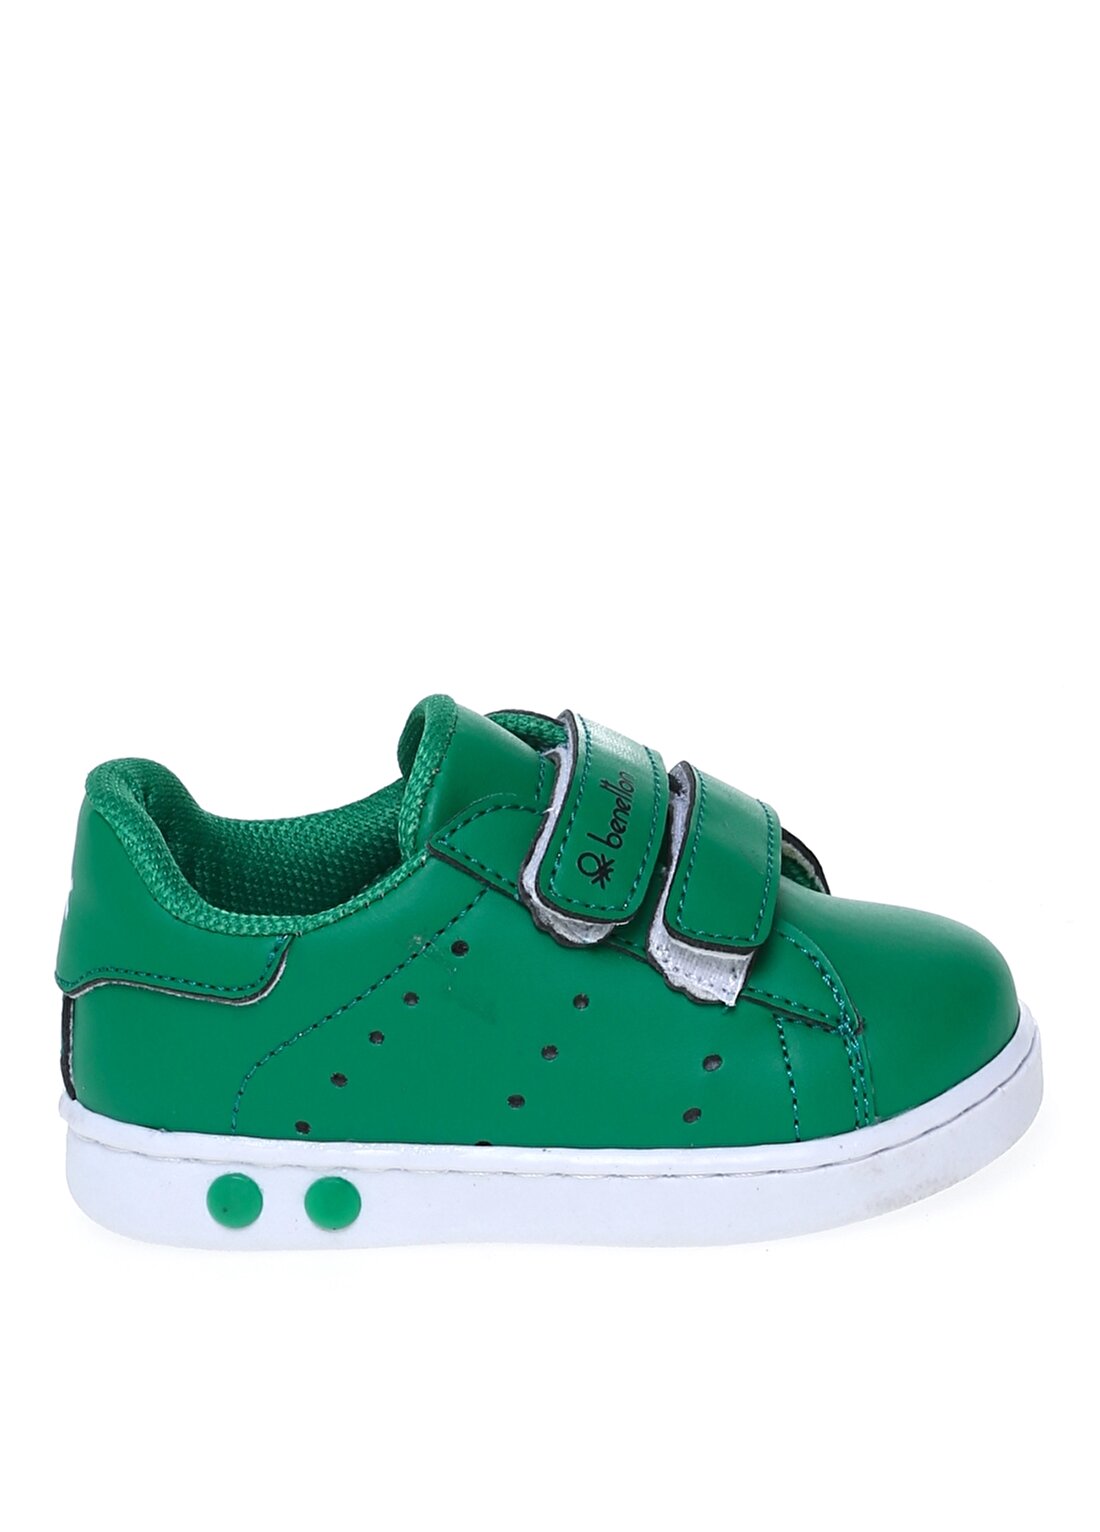 Benetton Yeşil Bebek Yürüyüş Ayakkabısı BN-30452